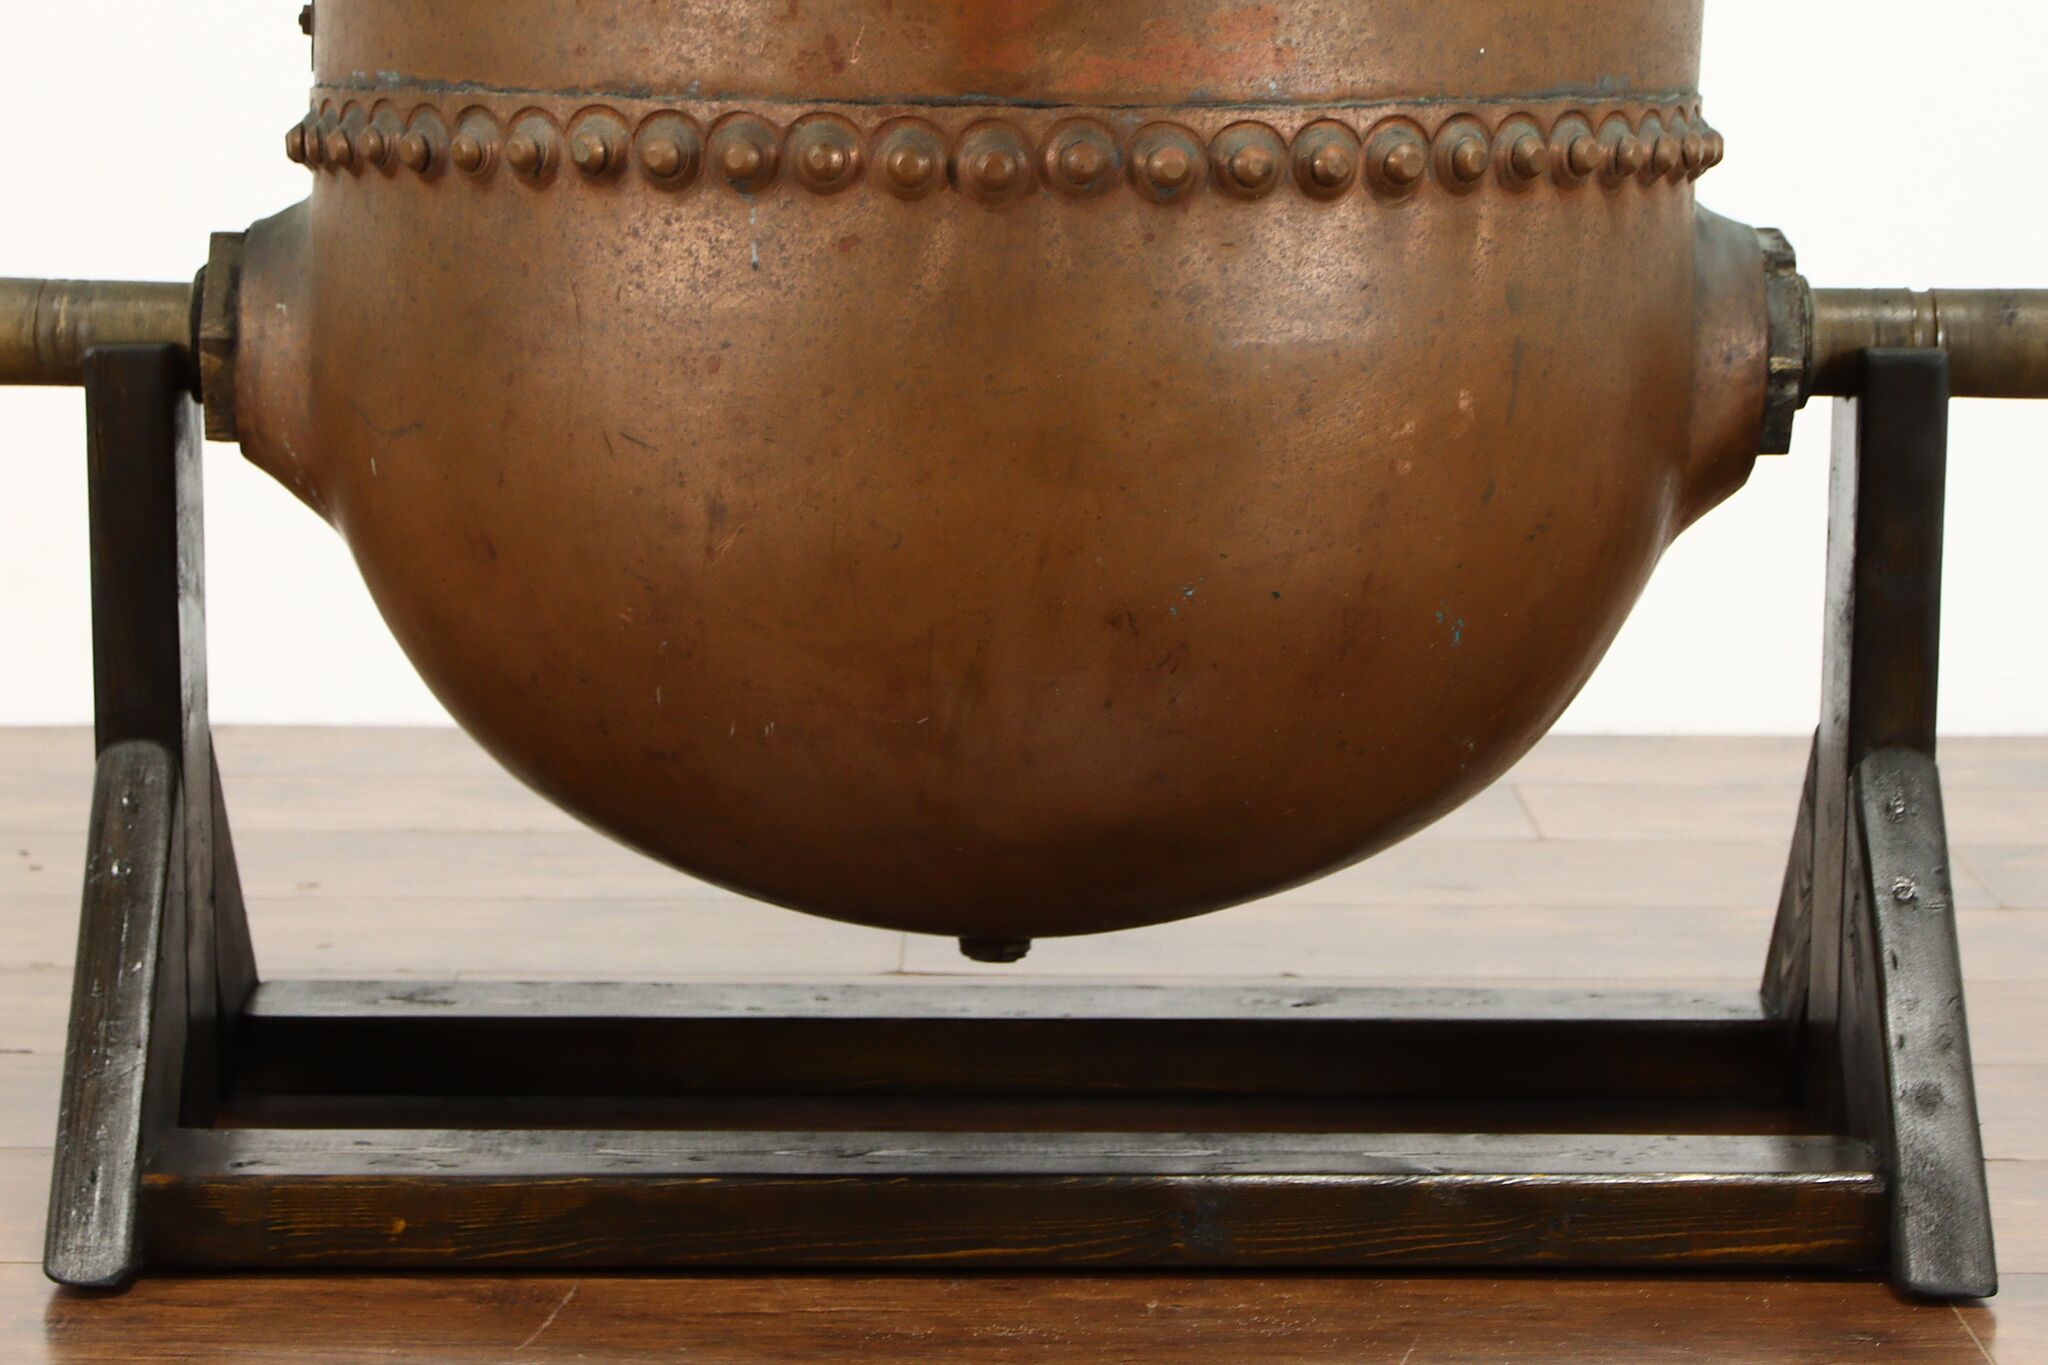 Antique Copper Candy Cauldron Pot - antiques - by owner